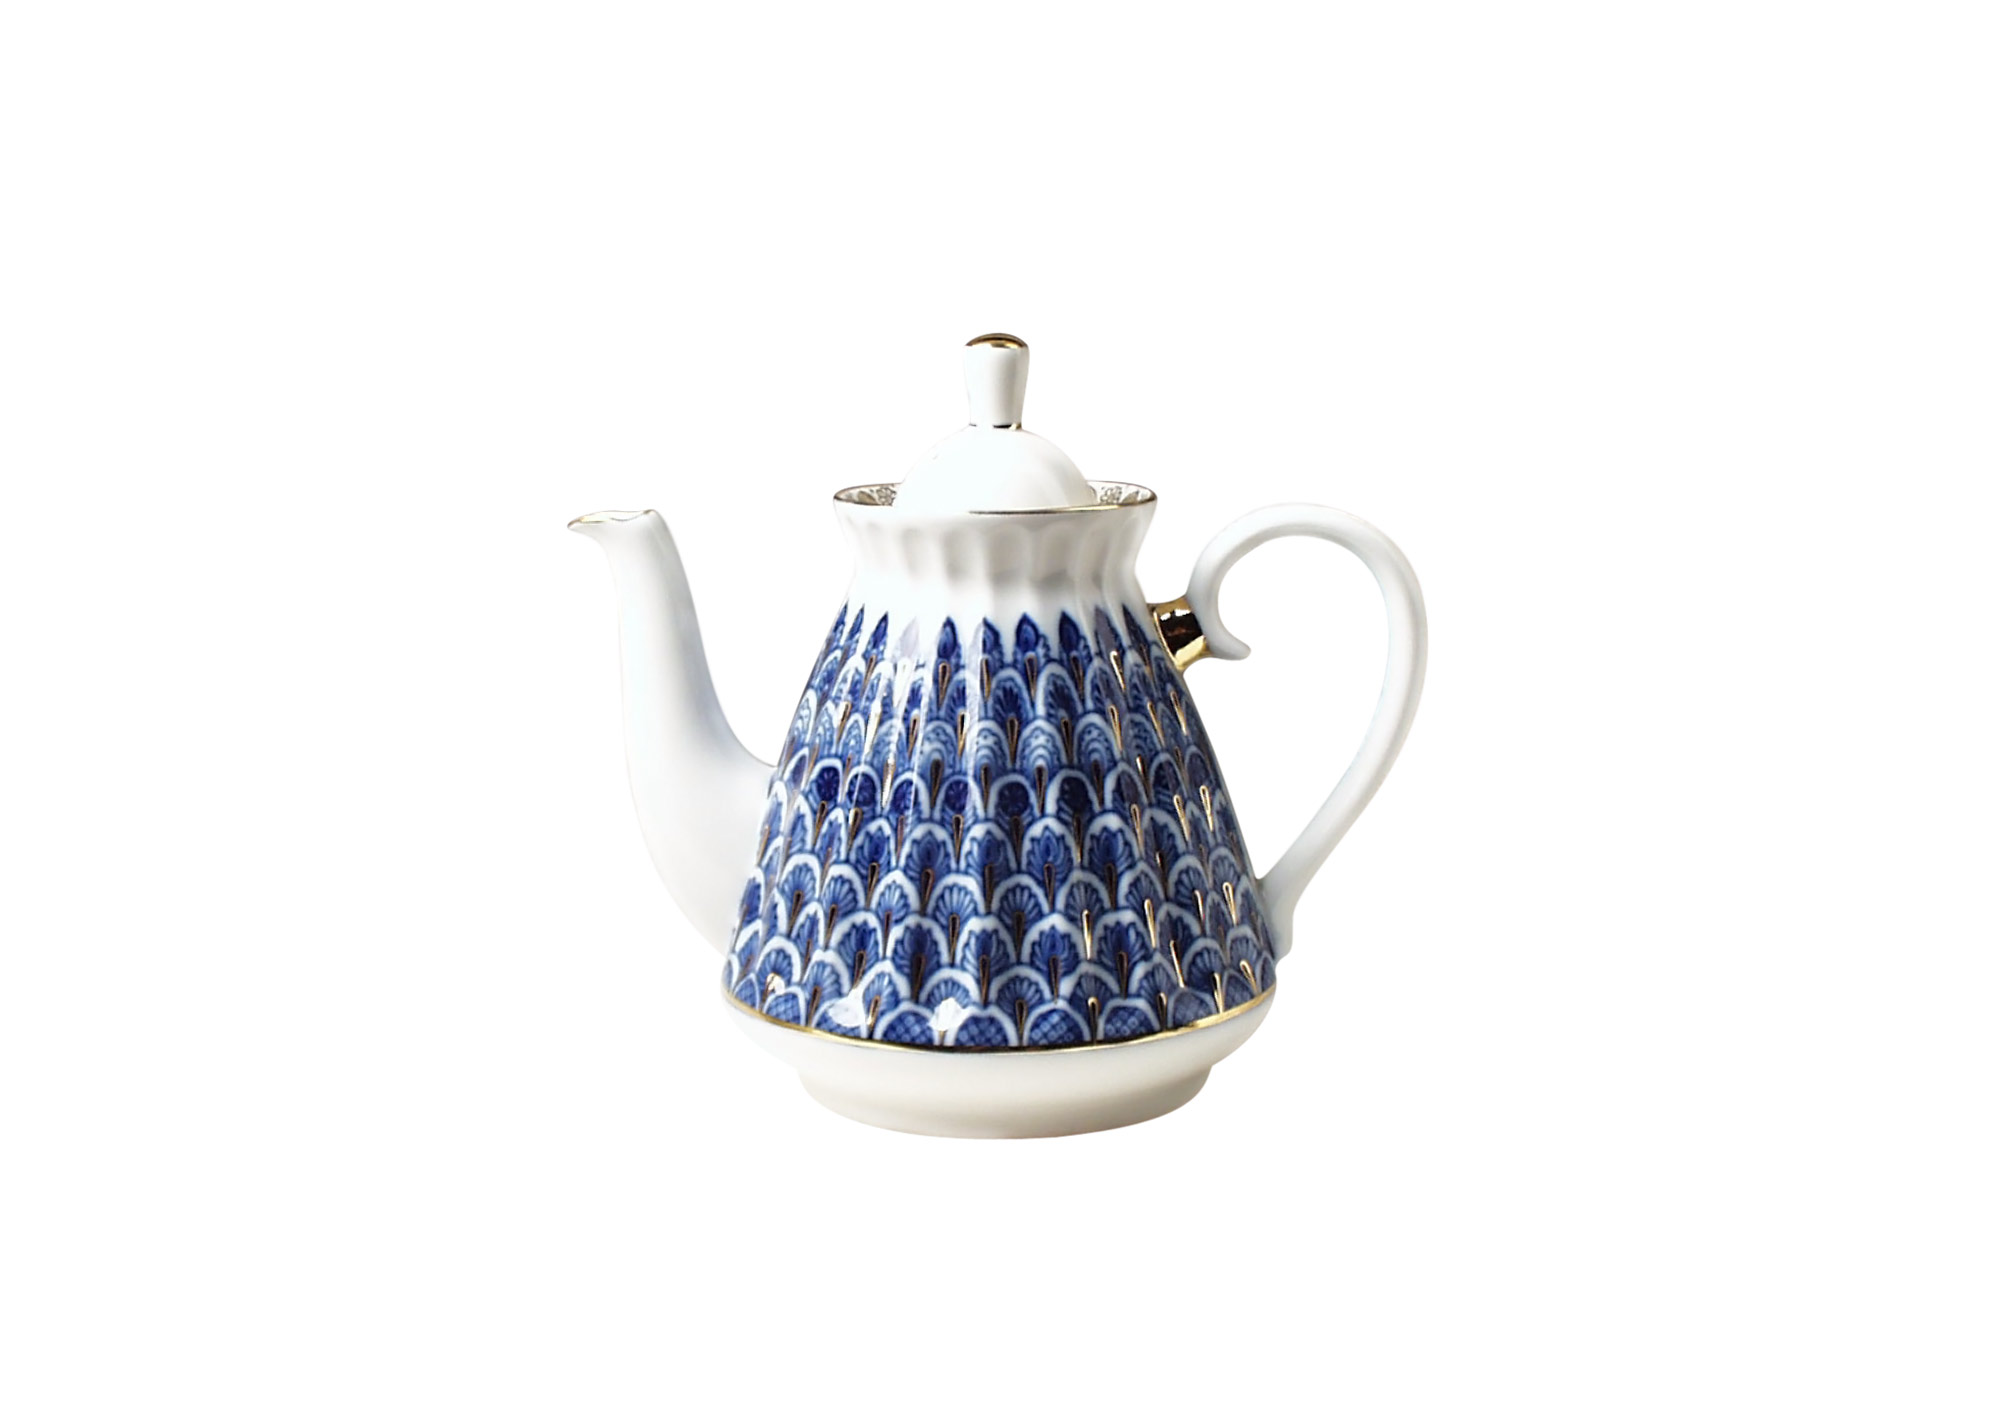 Buy Forget-Me-Not Porcelain Teapot at GoldenCockerel.com